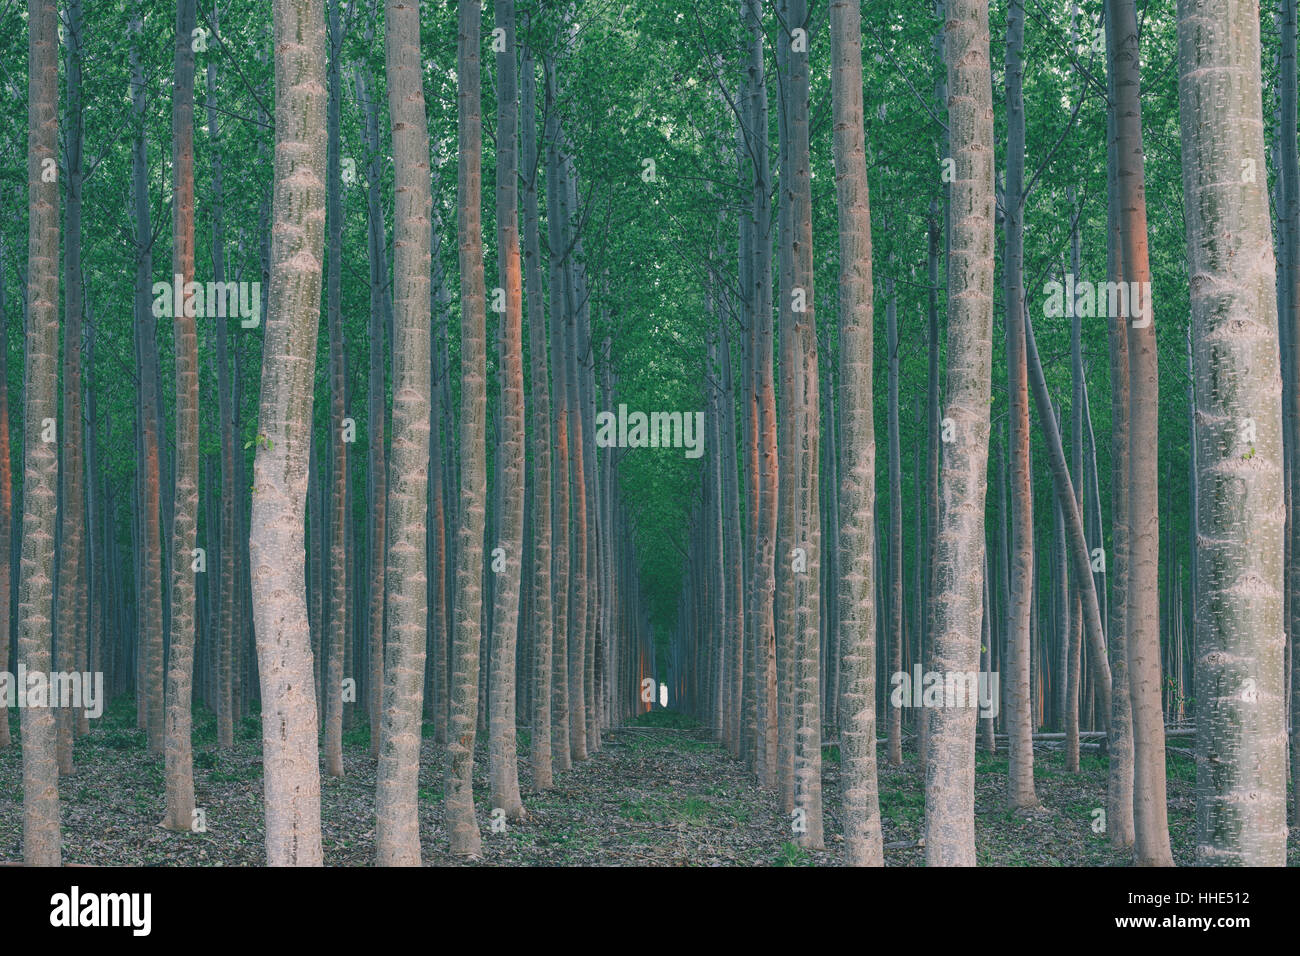 Una piantagione di alberi di pioppo, un commerciale tree farm. Alti fusti diritti e verde vivace albero canopy. Foto Stock